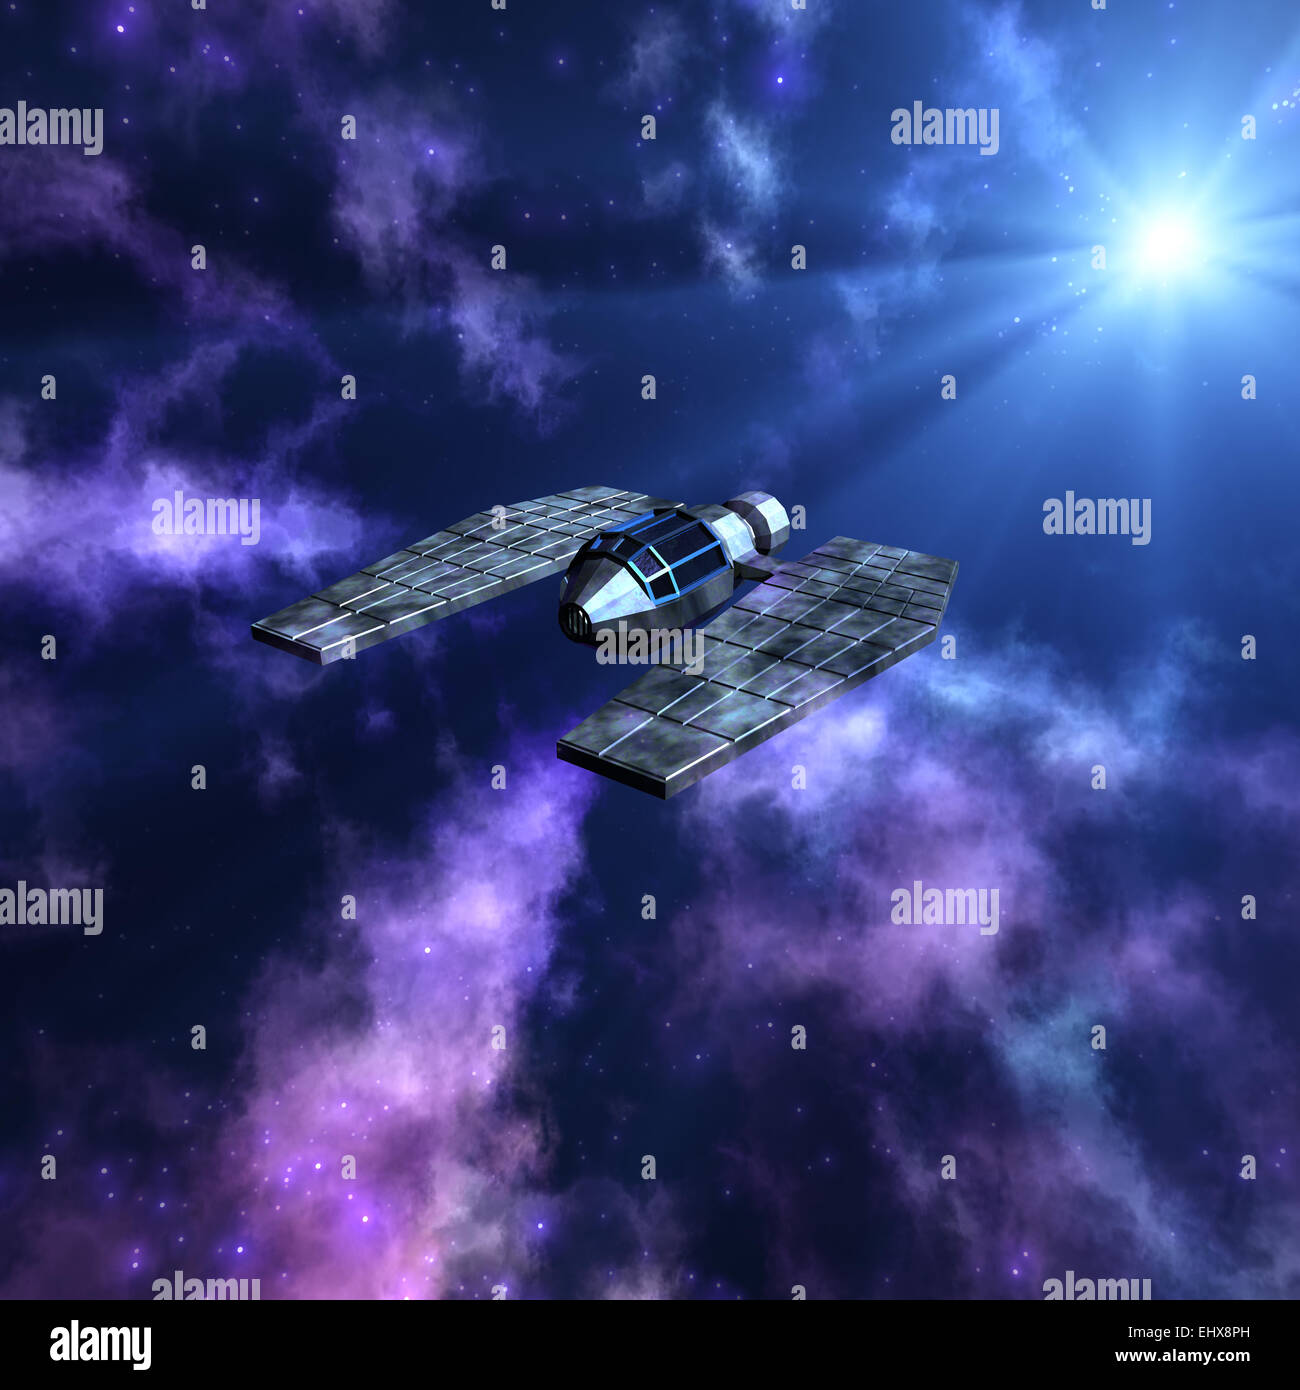 Magnifico spazio stellato scena 3d con una navicella spaziale Foto Stock